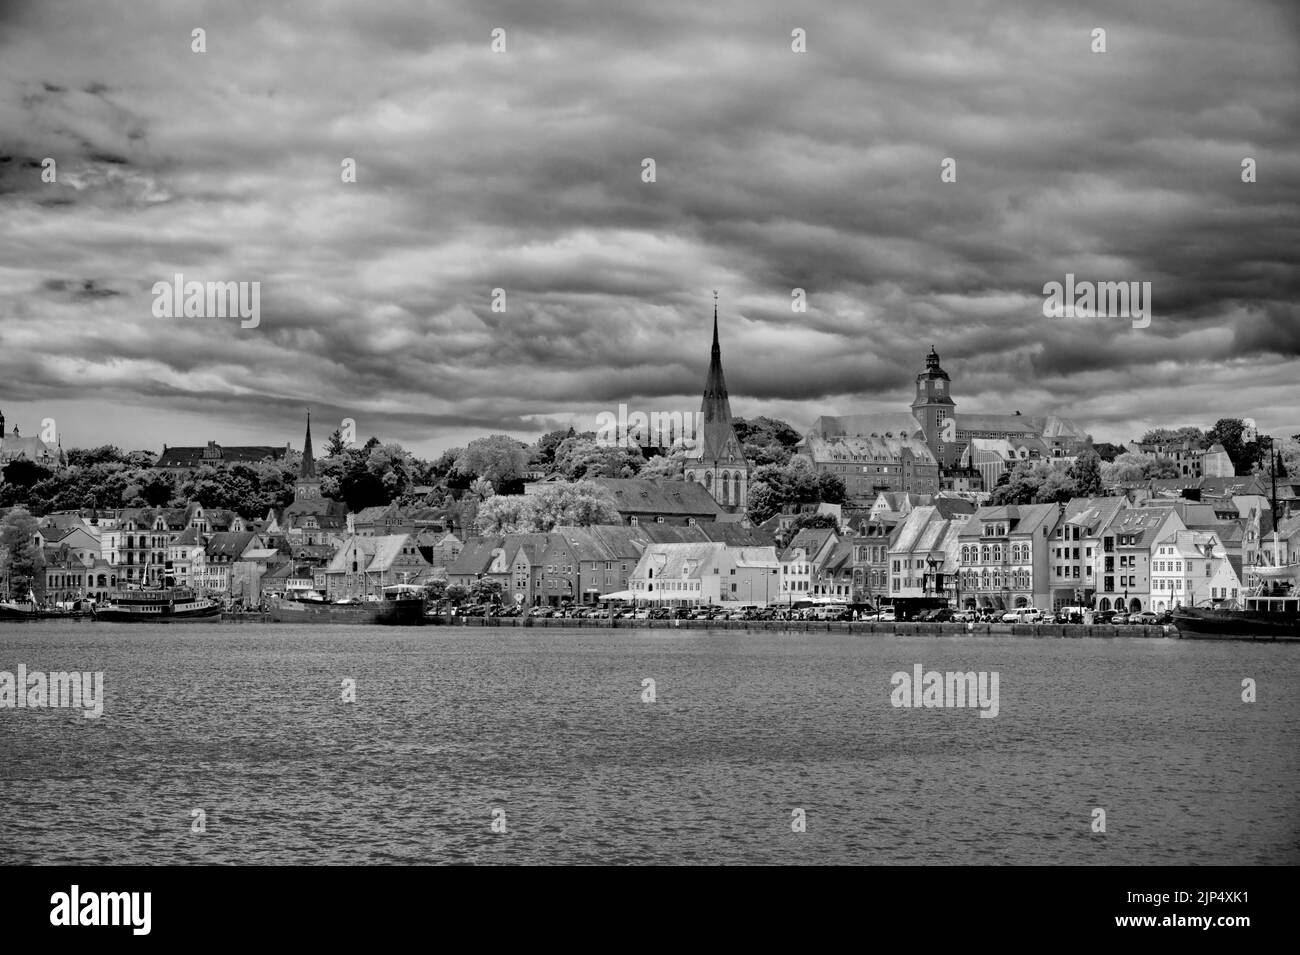 Flensburg Allemagne Europe vue panoramique depuis le bord de mer en noir et blanc Banque D'Images